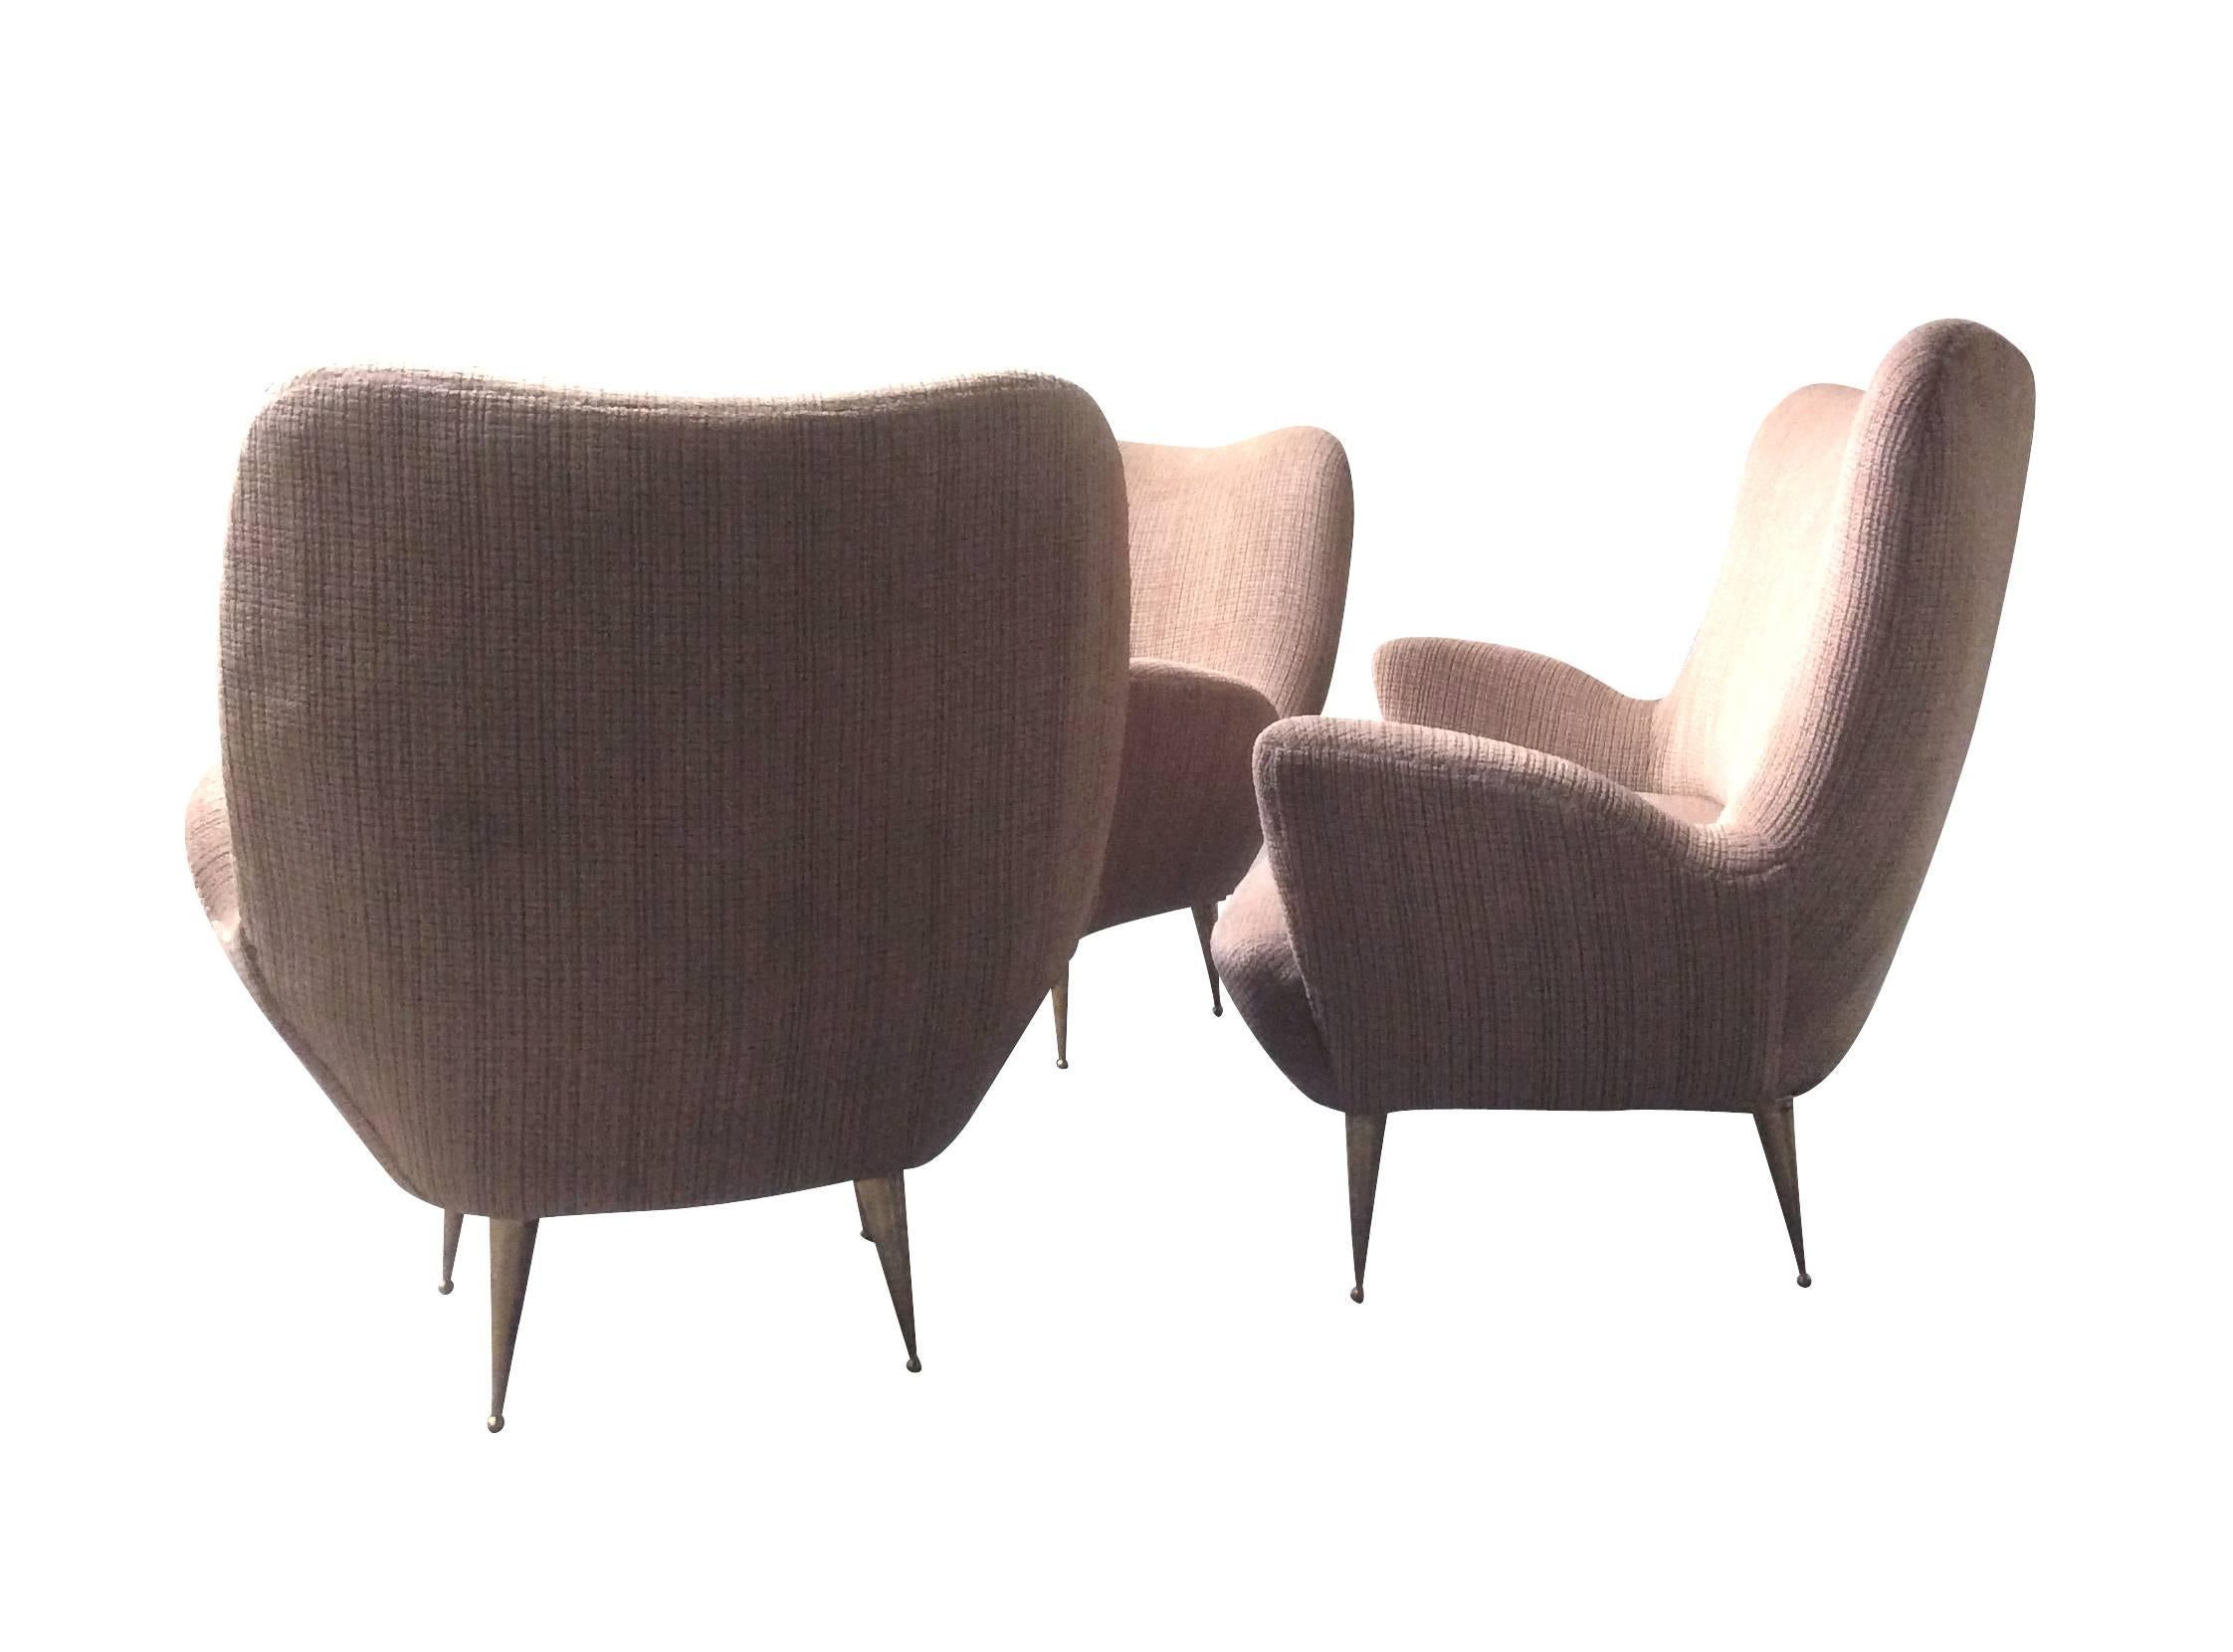 Schöne Sitzgarnitur, bestehend aus einem Sofa und zwei Sesseln, Italien, 1950.
Guter Originalzustand. Die Füße sind aus Messing.

Abmessungen des Sofas
Höhe: 30,31 Zoll.
Sitzhöhe: 13,38 Zoll.
Breite: 52 Zoll.
Tiefe: 27,55 Zoll.

  